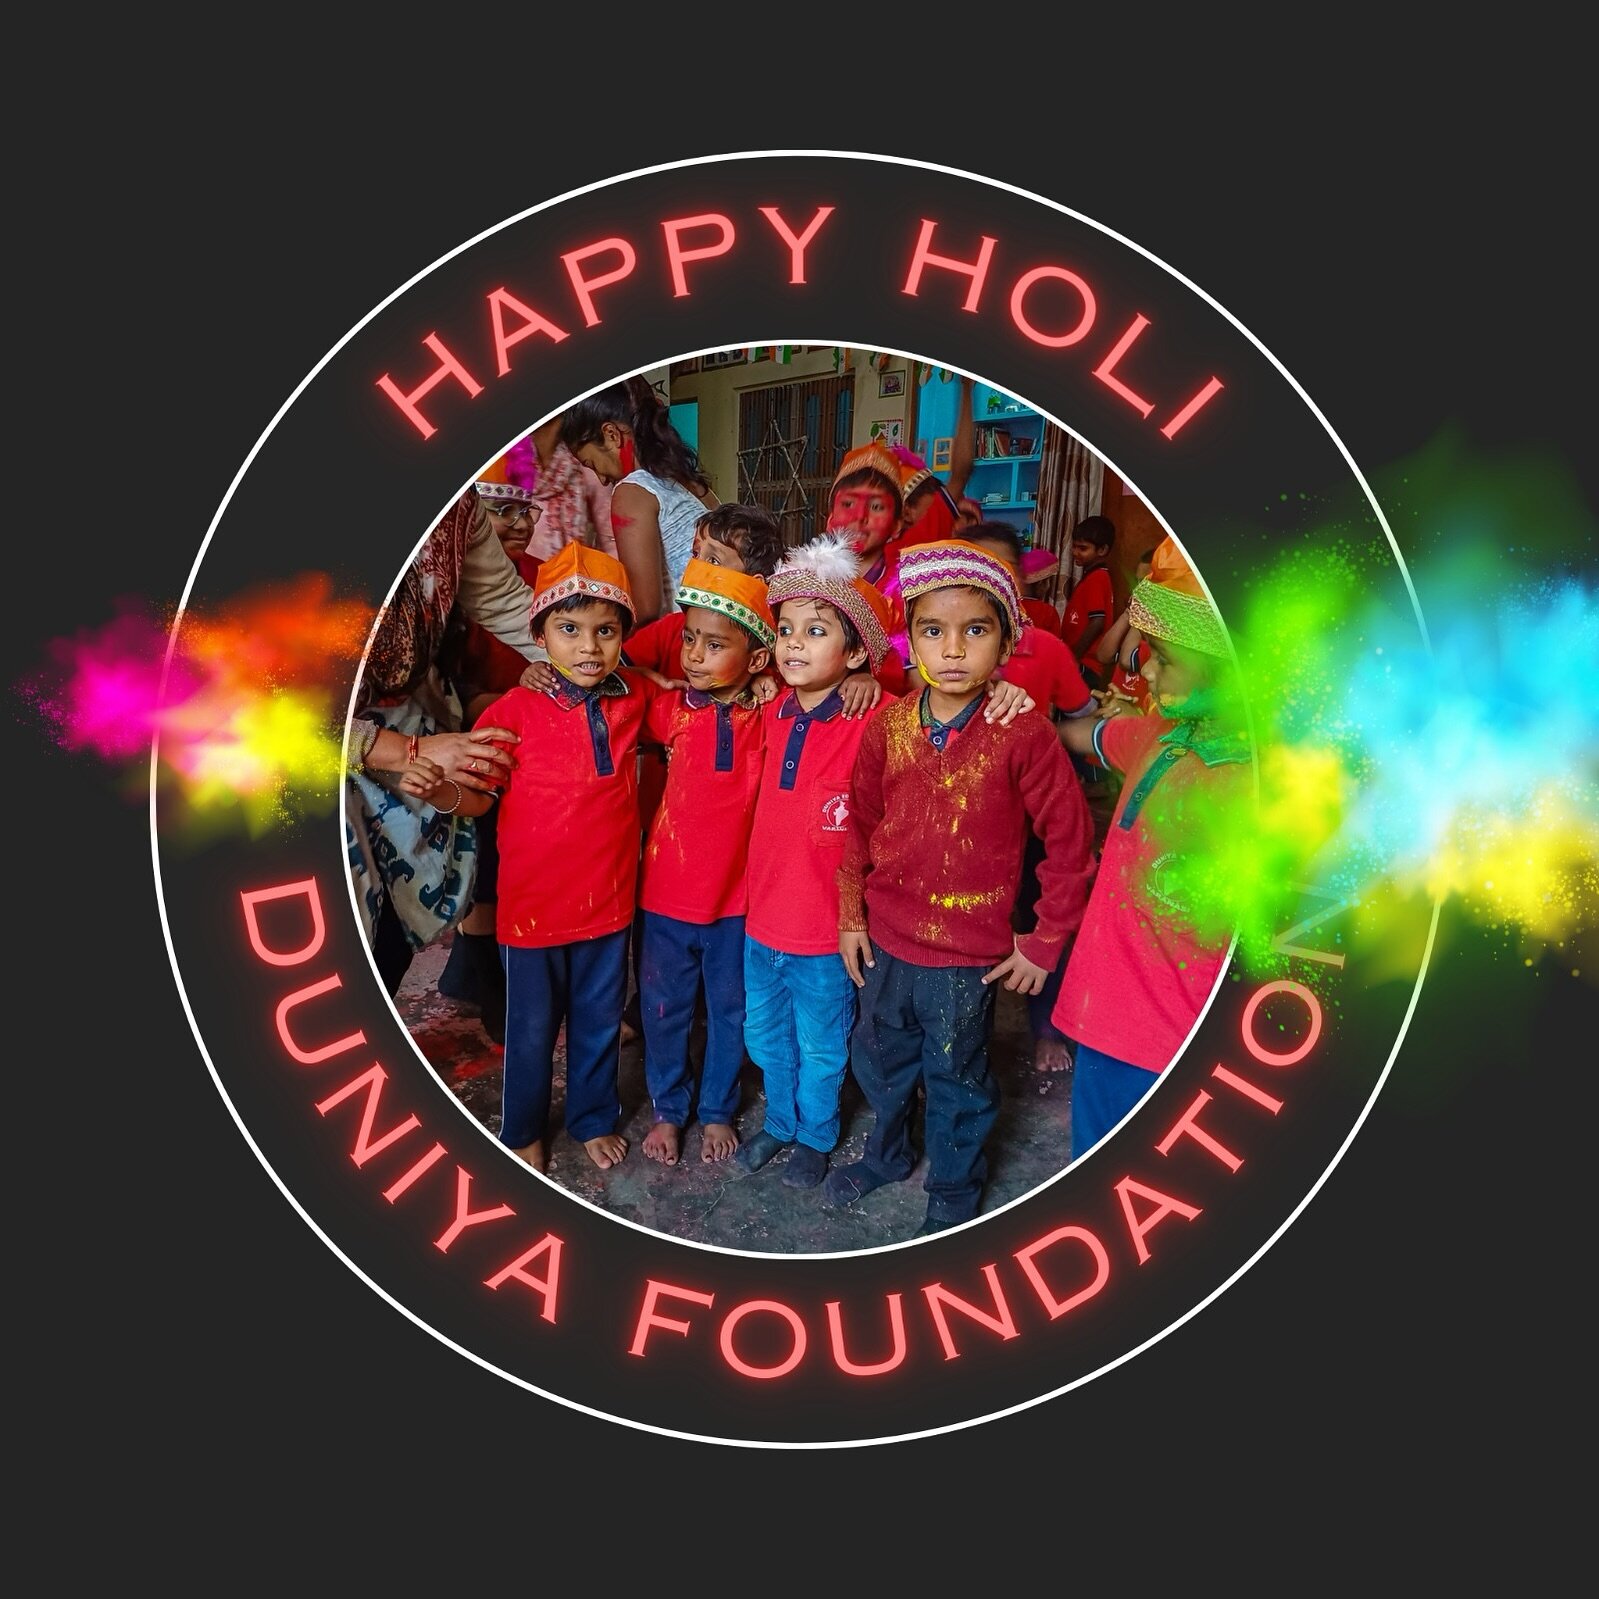 Happy holi! #holi #holifestival #varanasi #school